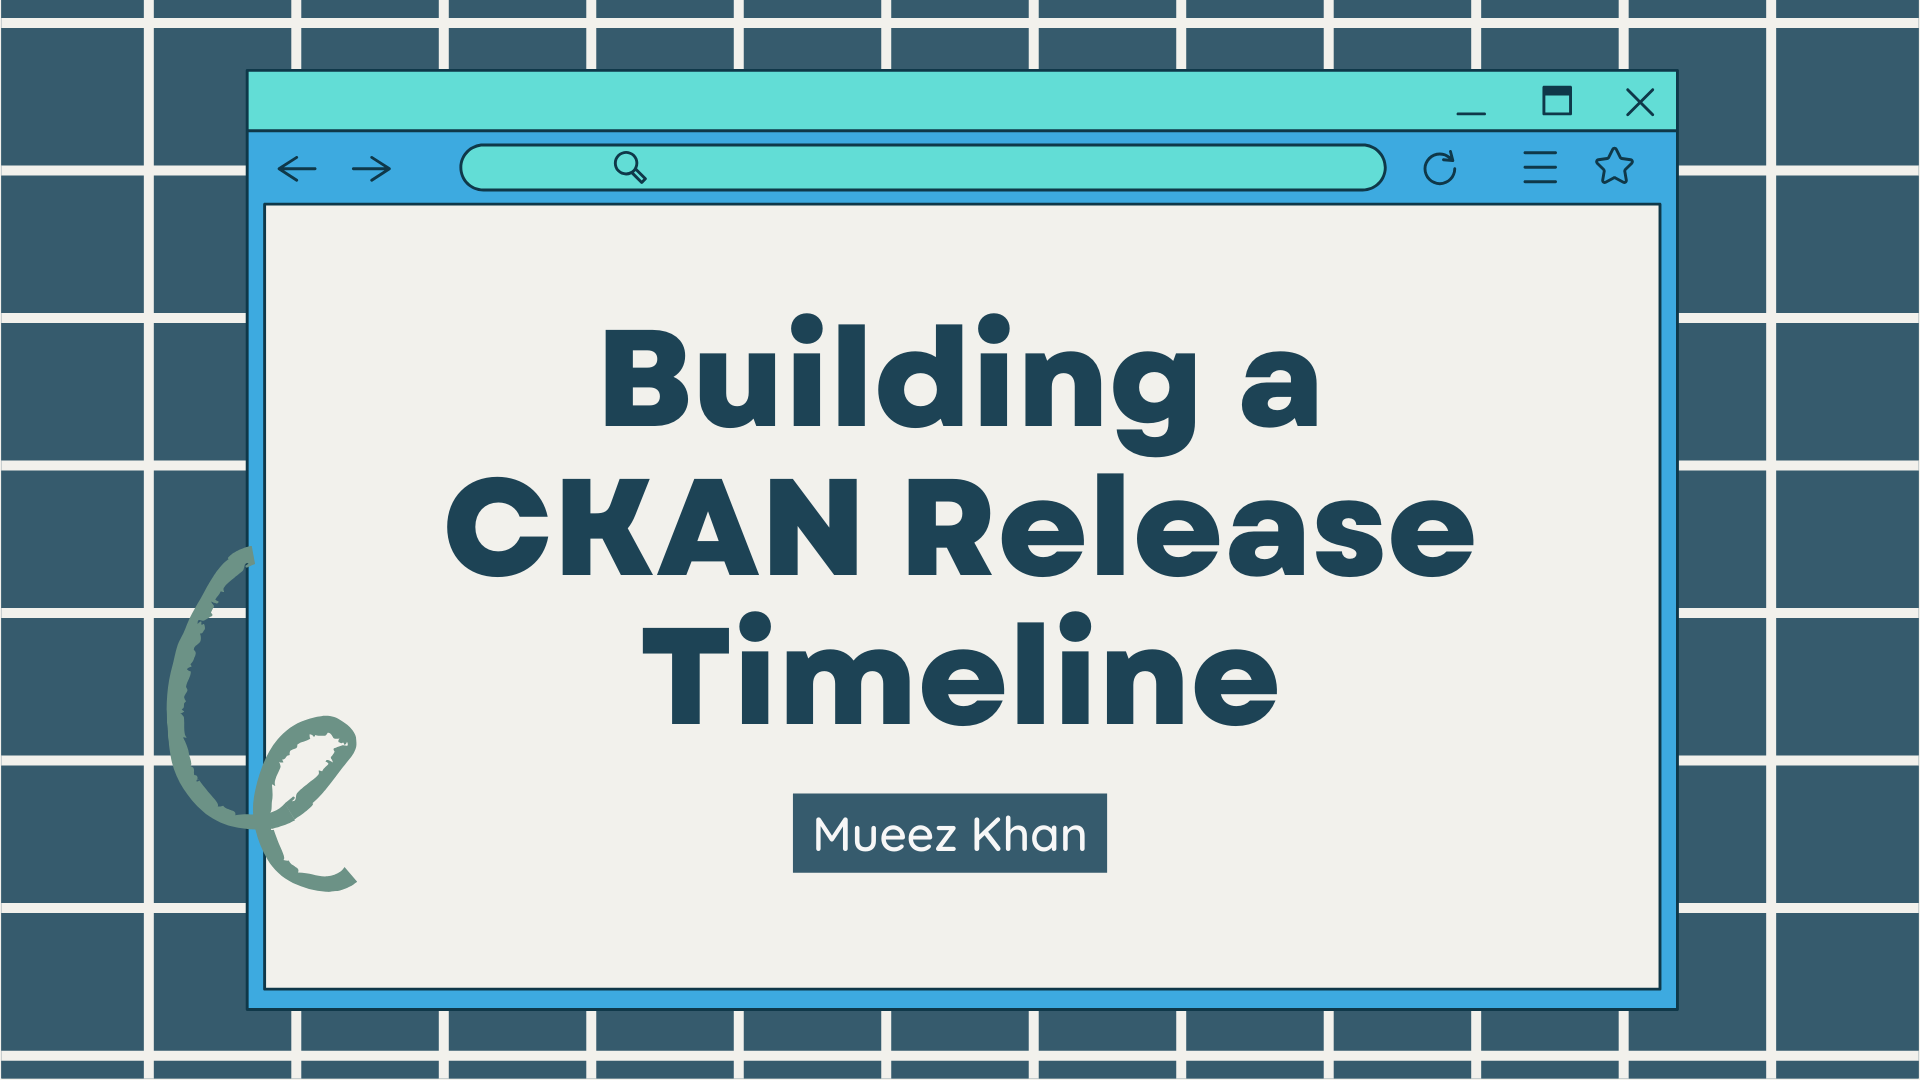 CKAN Release Timeline